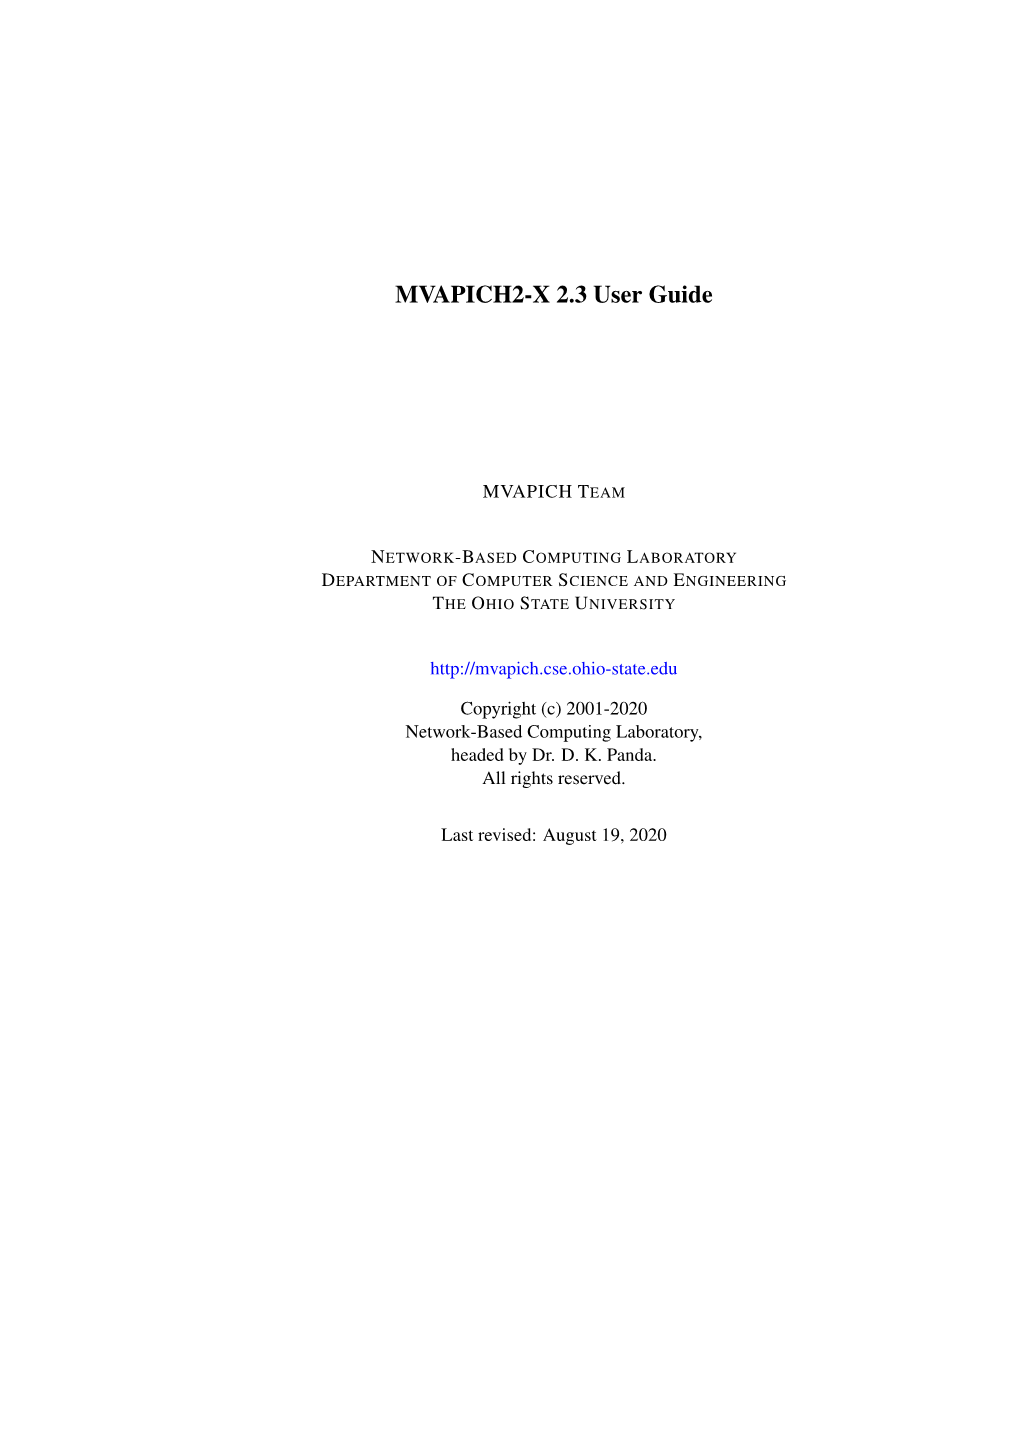 MVAPICH2-X 2.3 User Guide